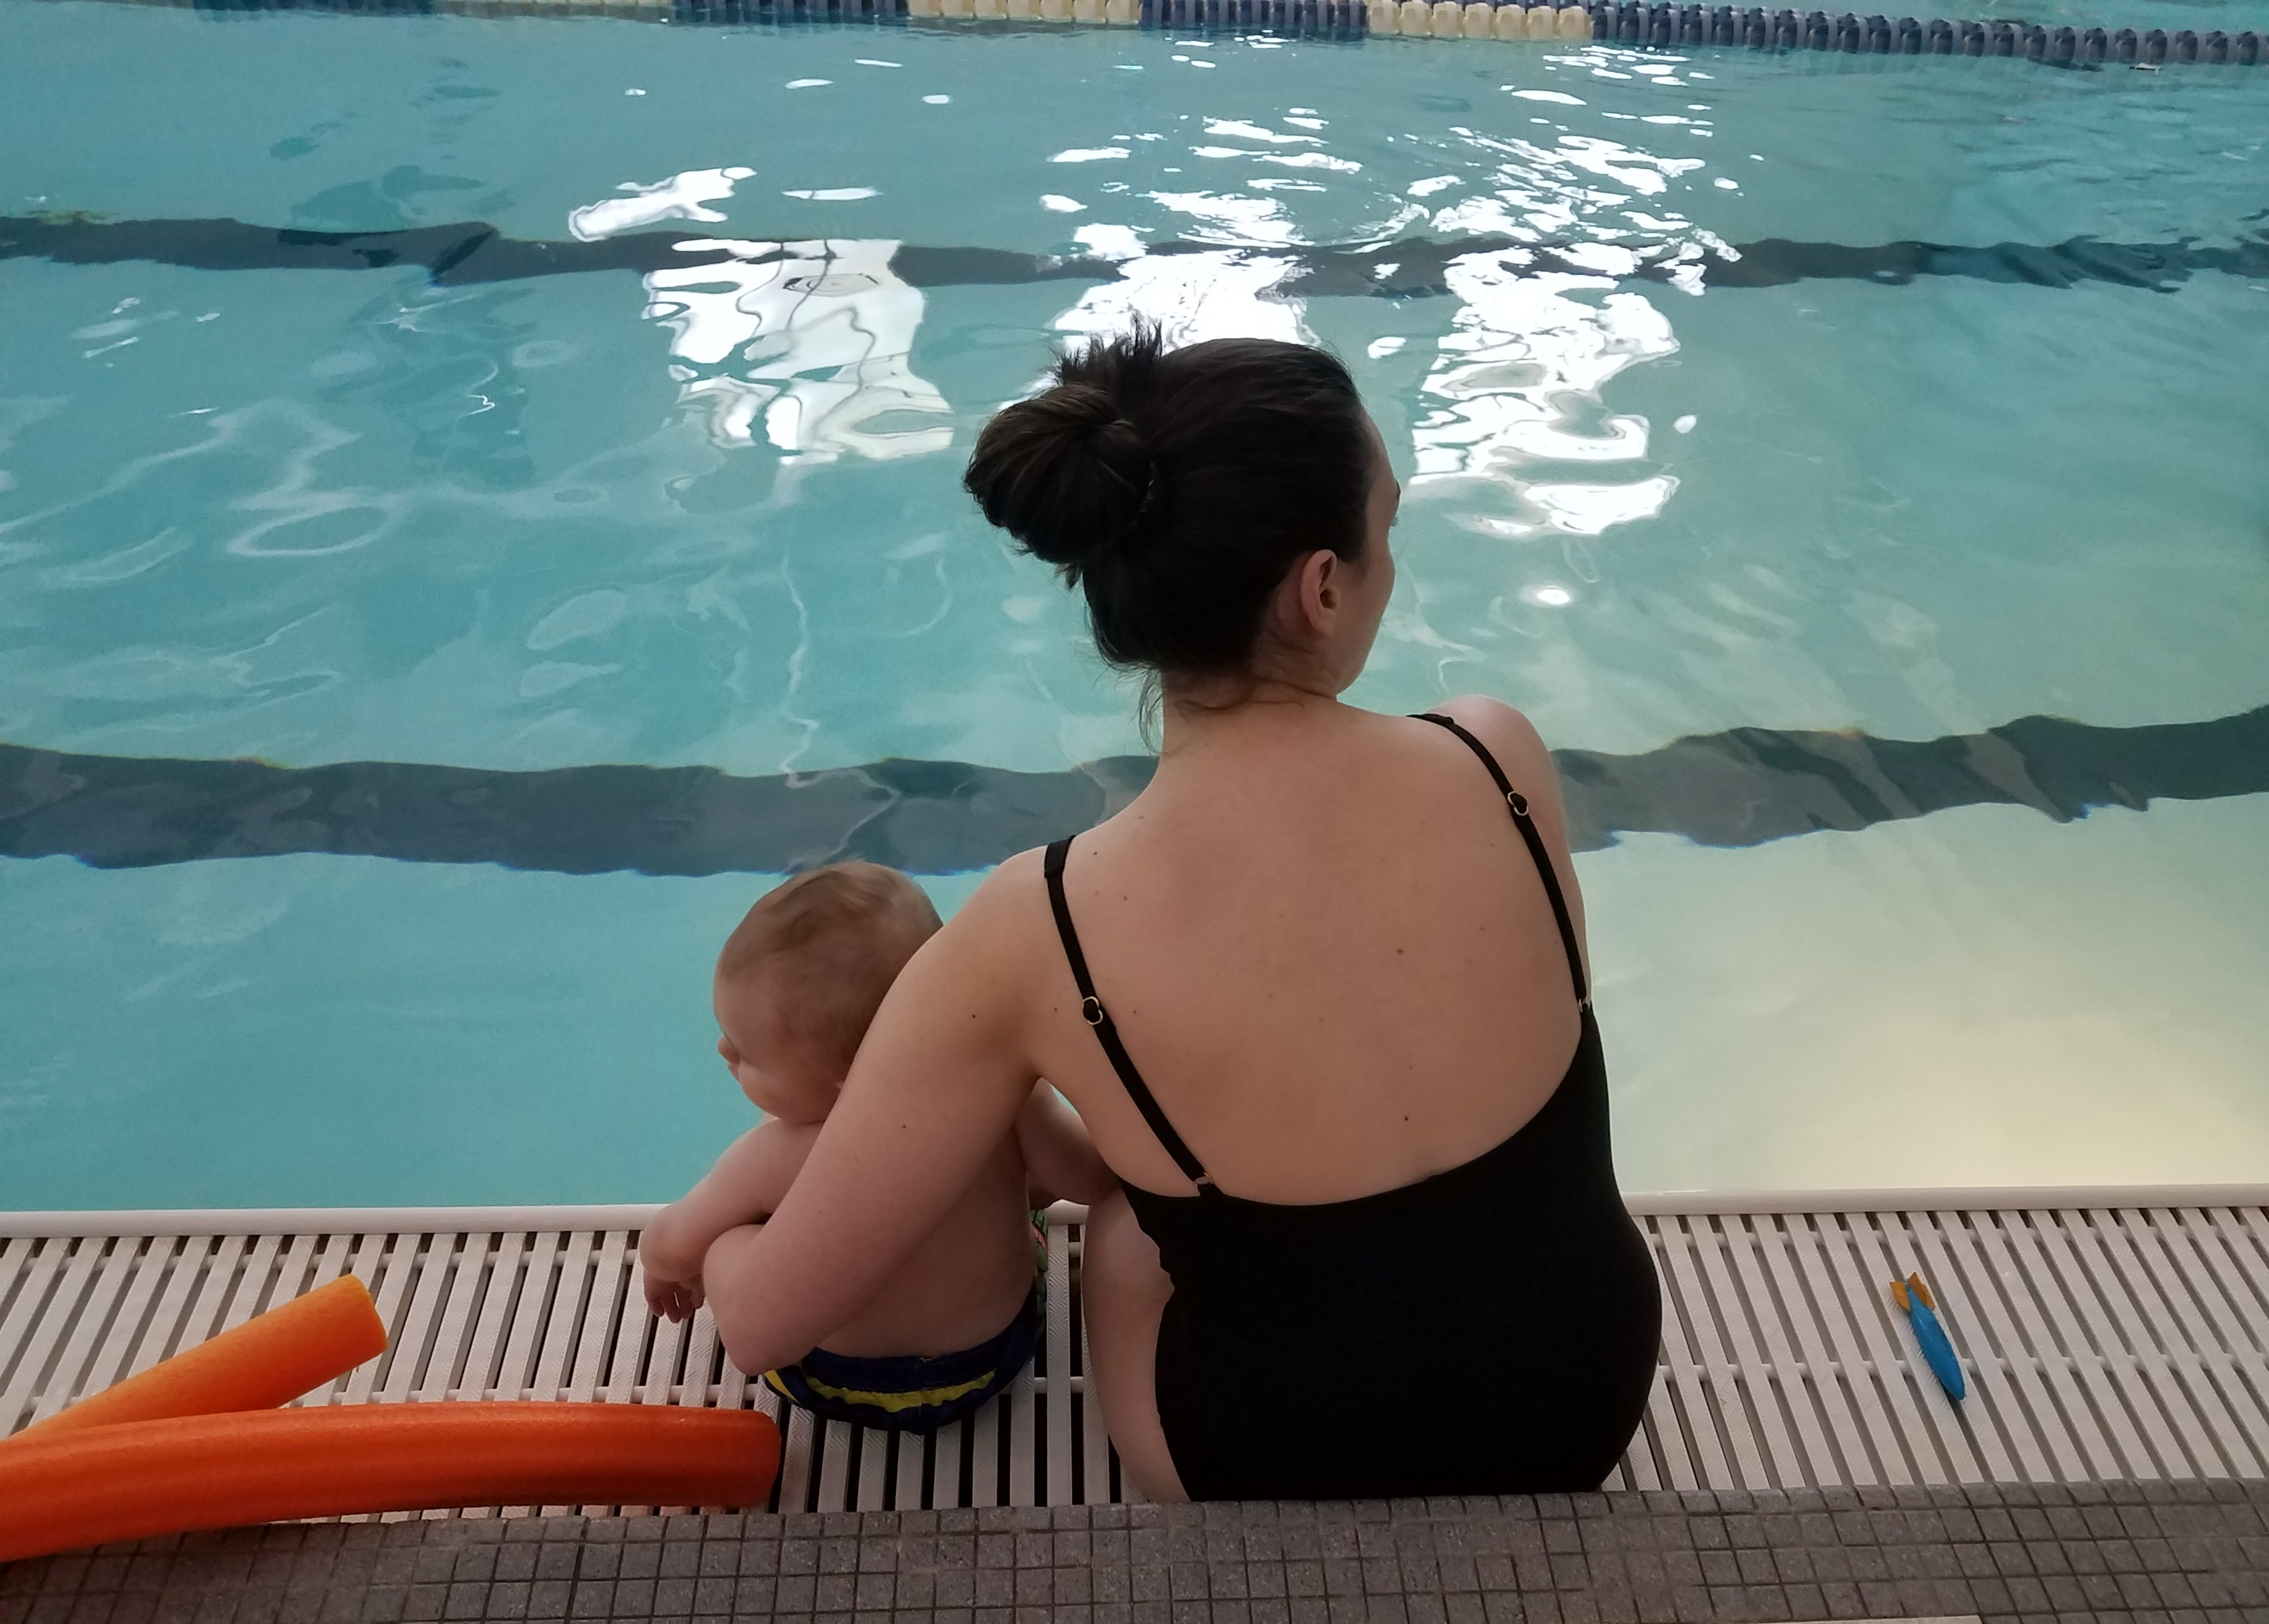 Baby swim classes, Part 2